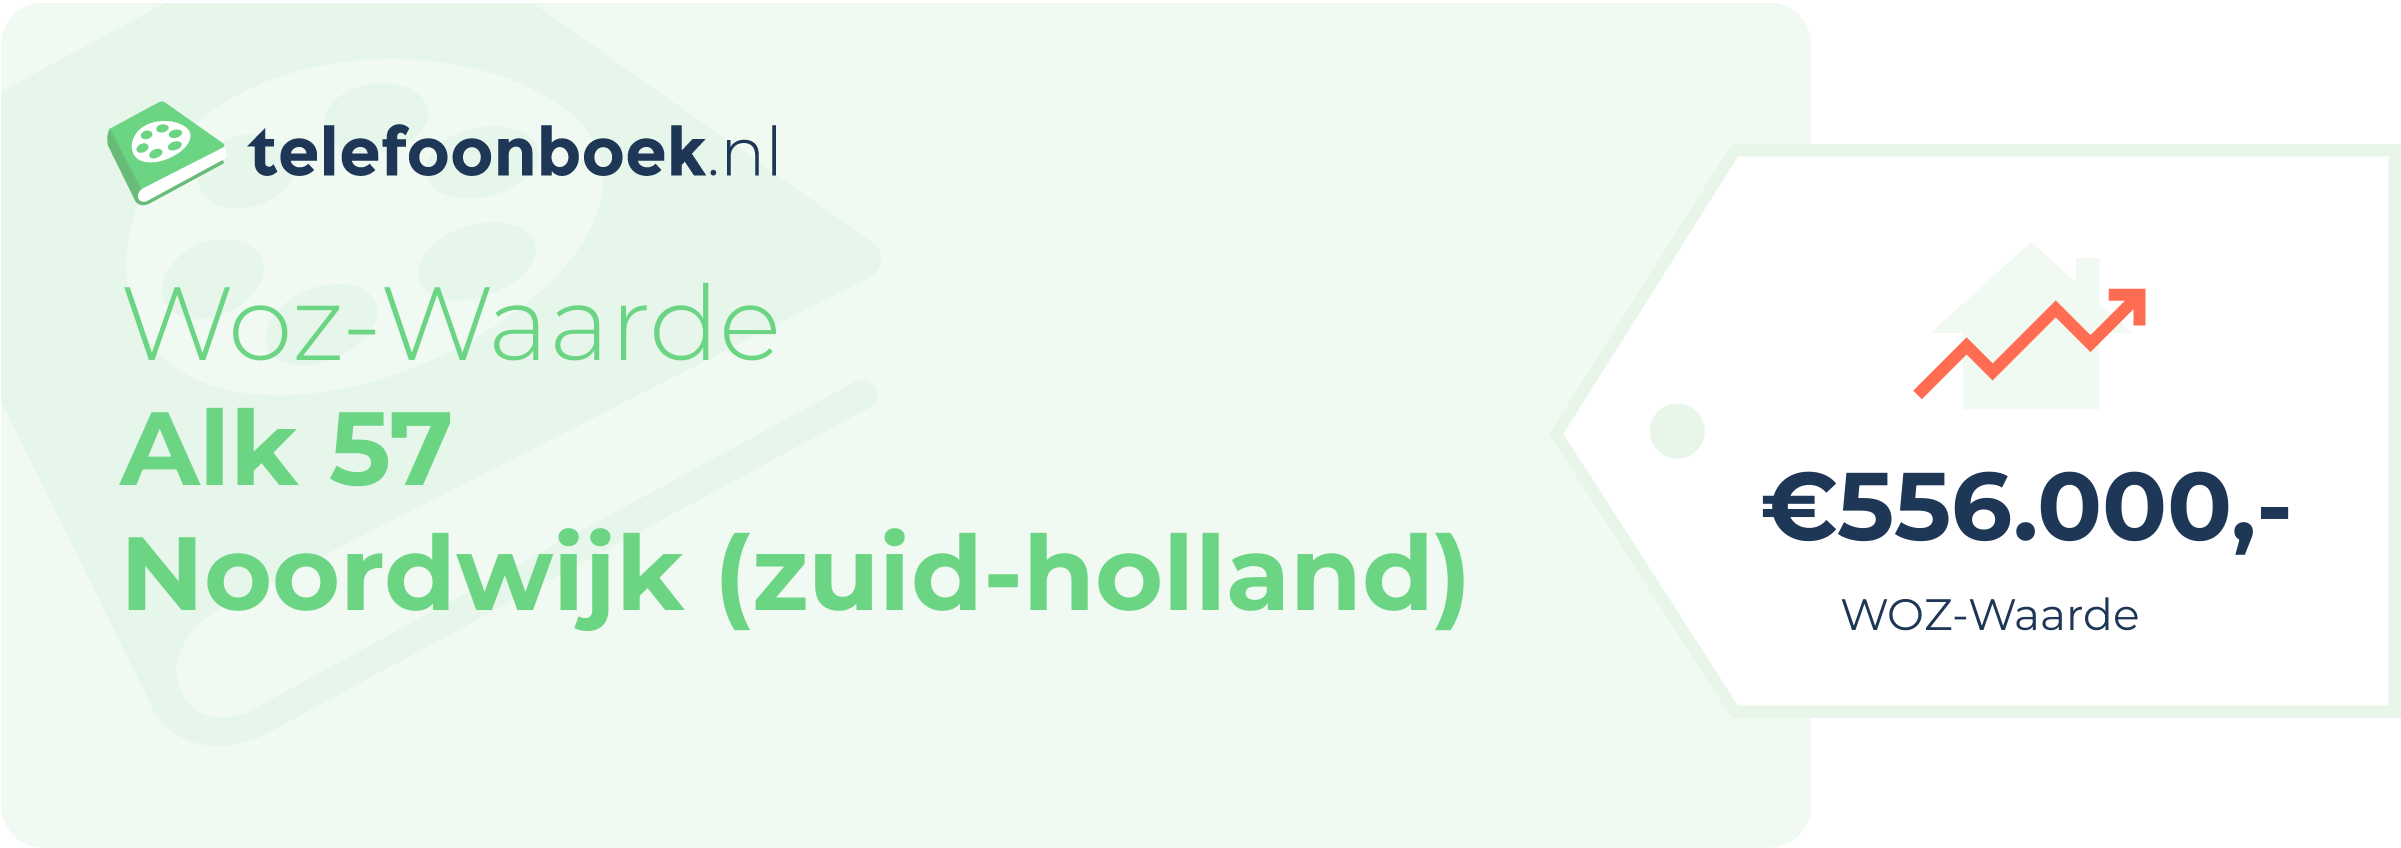 WOZ-waarde Alk 57 Noordwijk (Zuid-Holland)